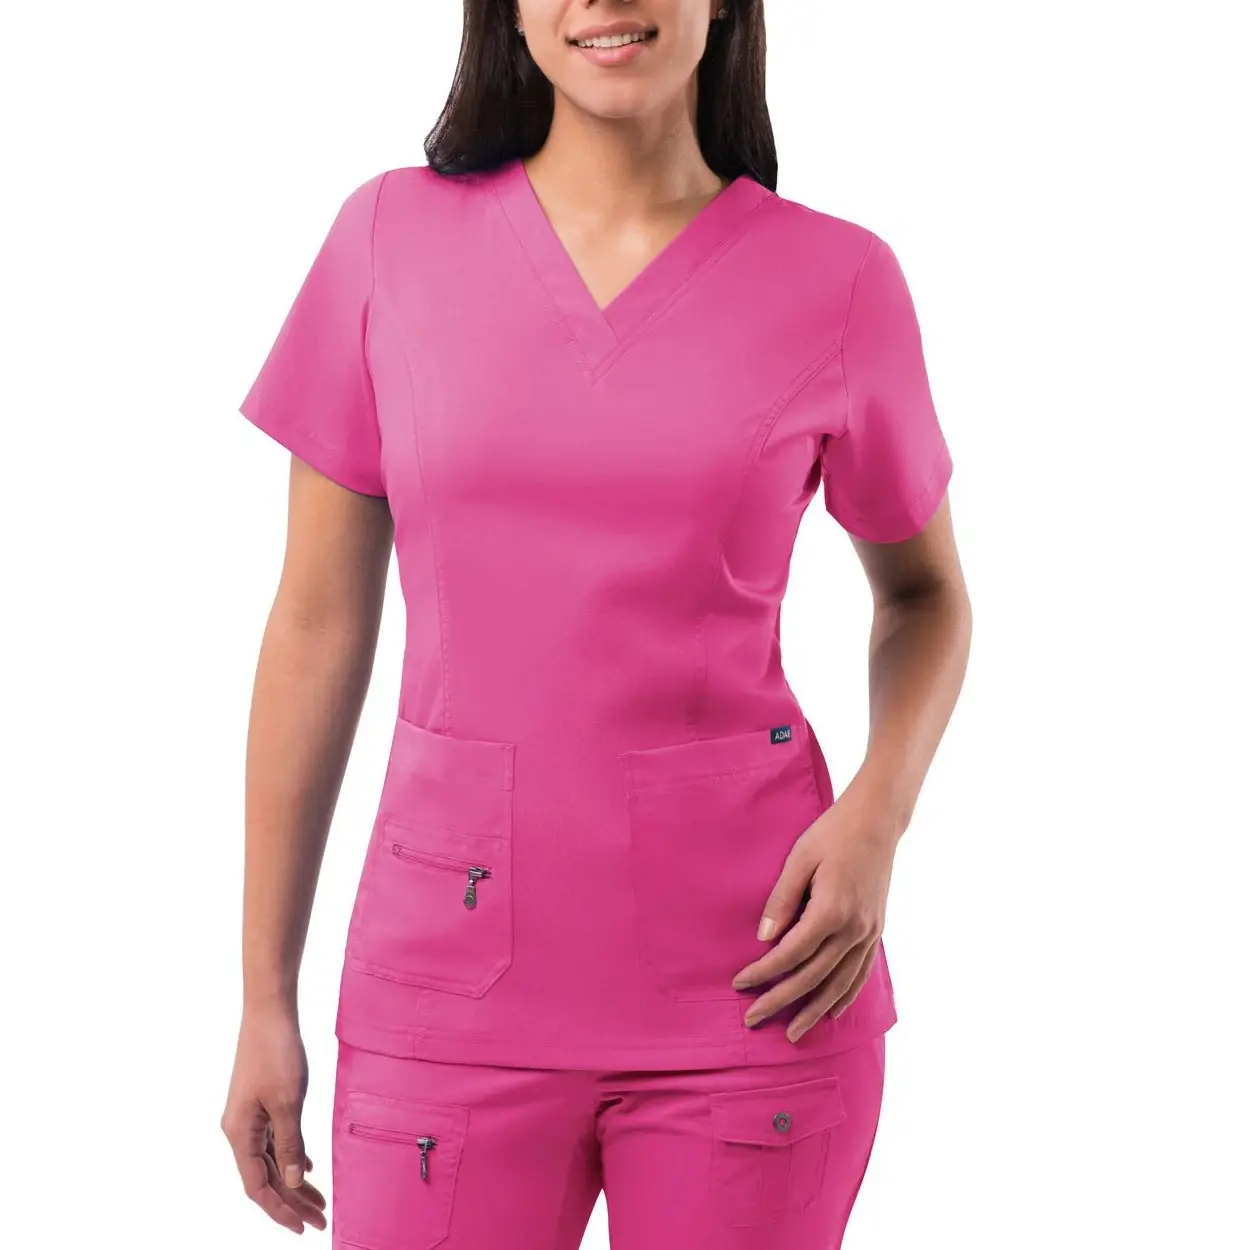 Vendita calda regalo per la settimana dell'infermiera uniforme aziendale uniforme medica da donna Scrub medico Scrub uniforme sanitaria da infermiera